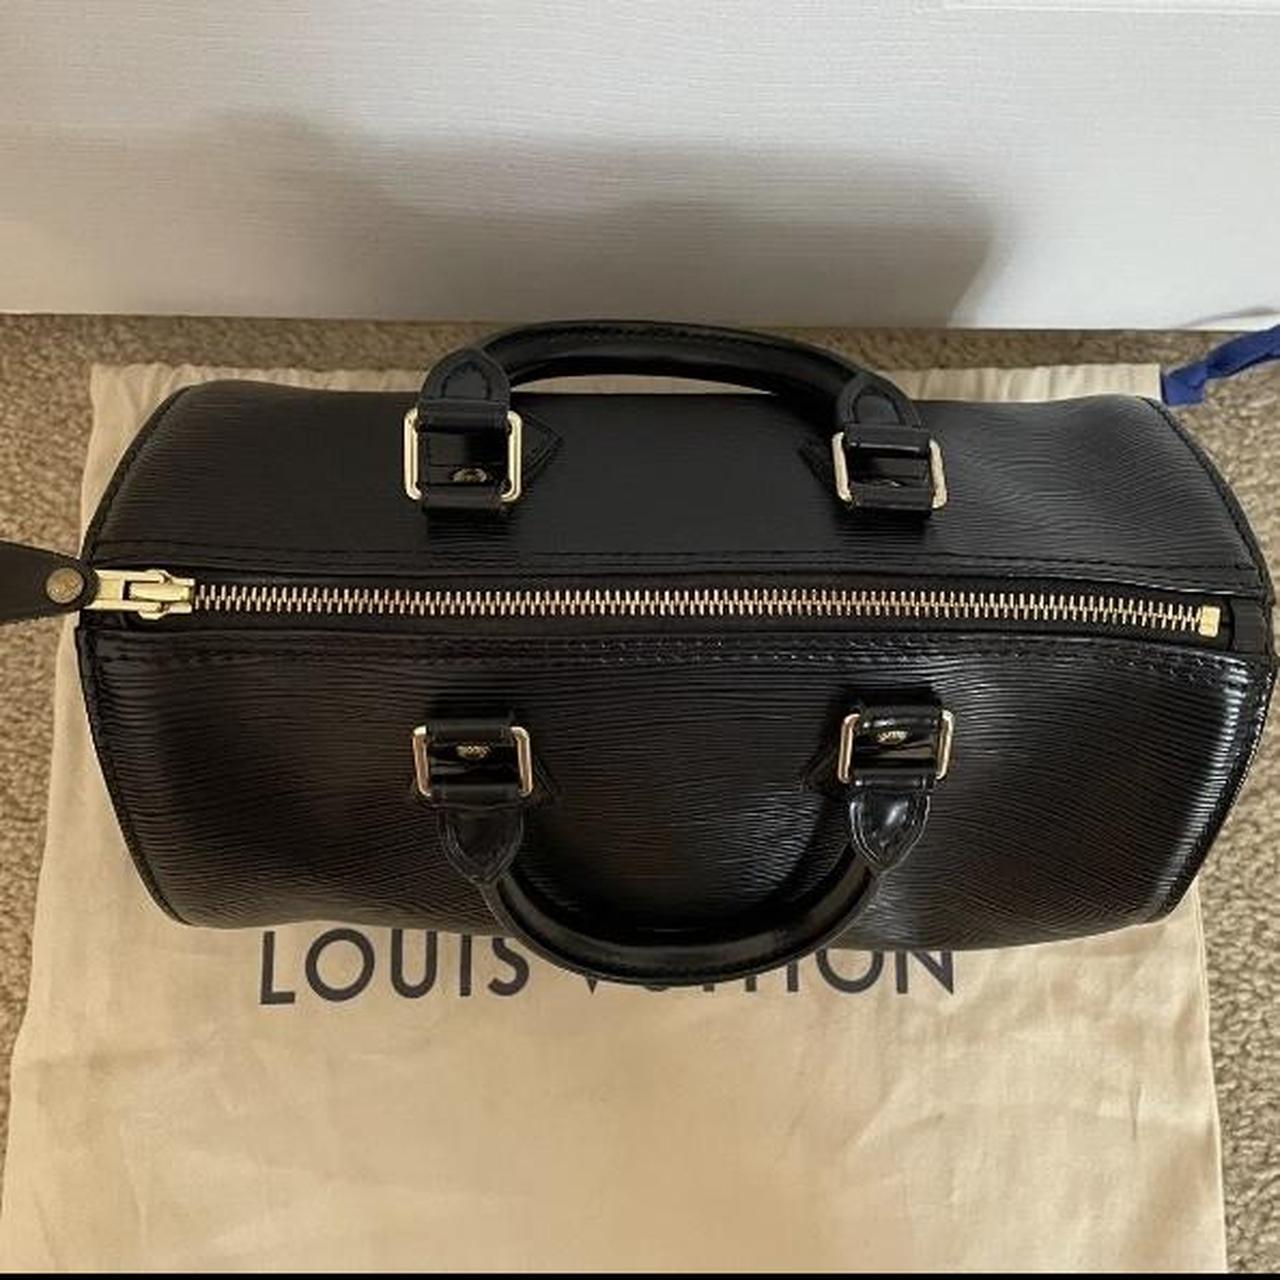 Louis vuitton duffel bag mens - Depop